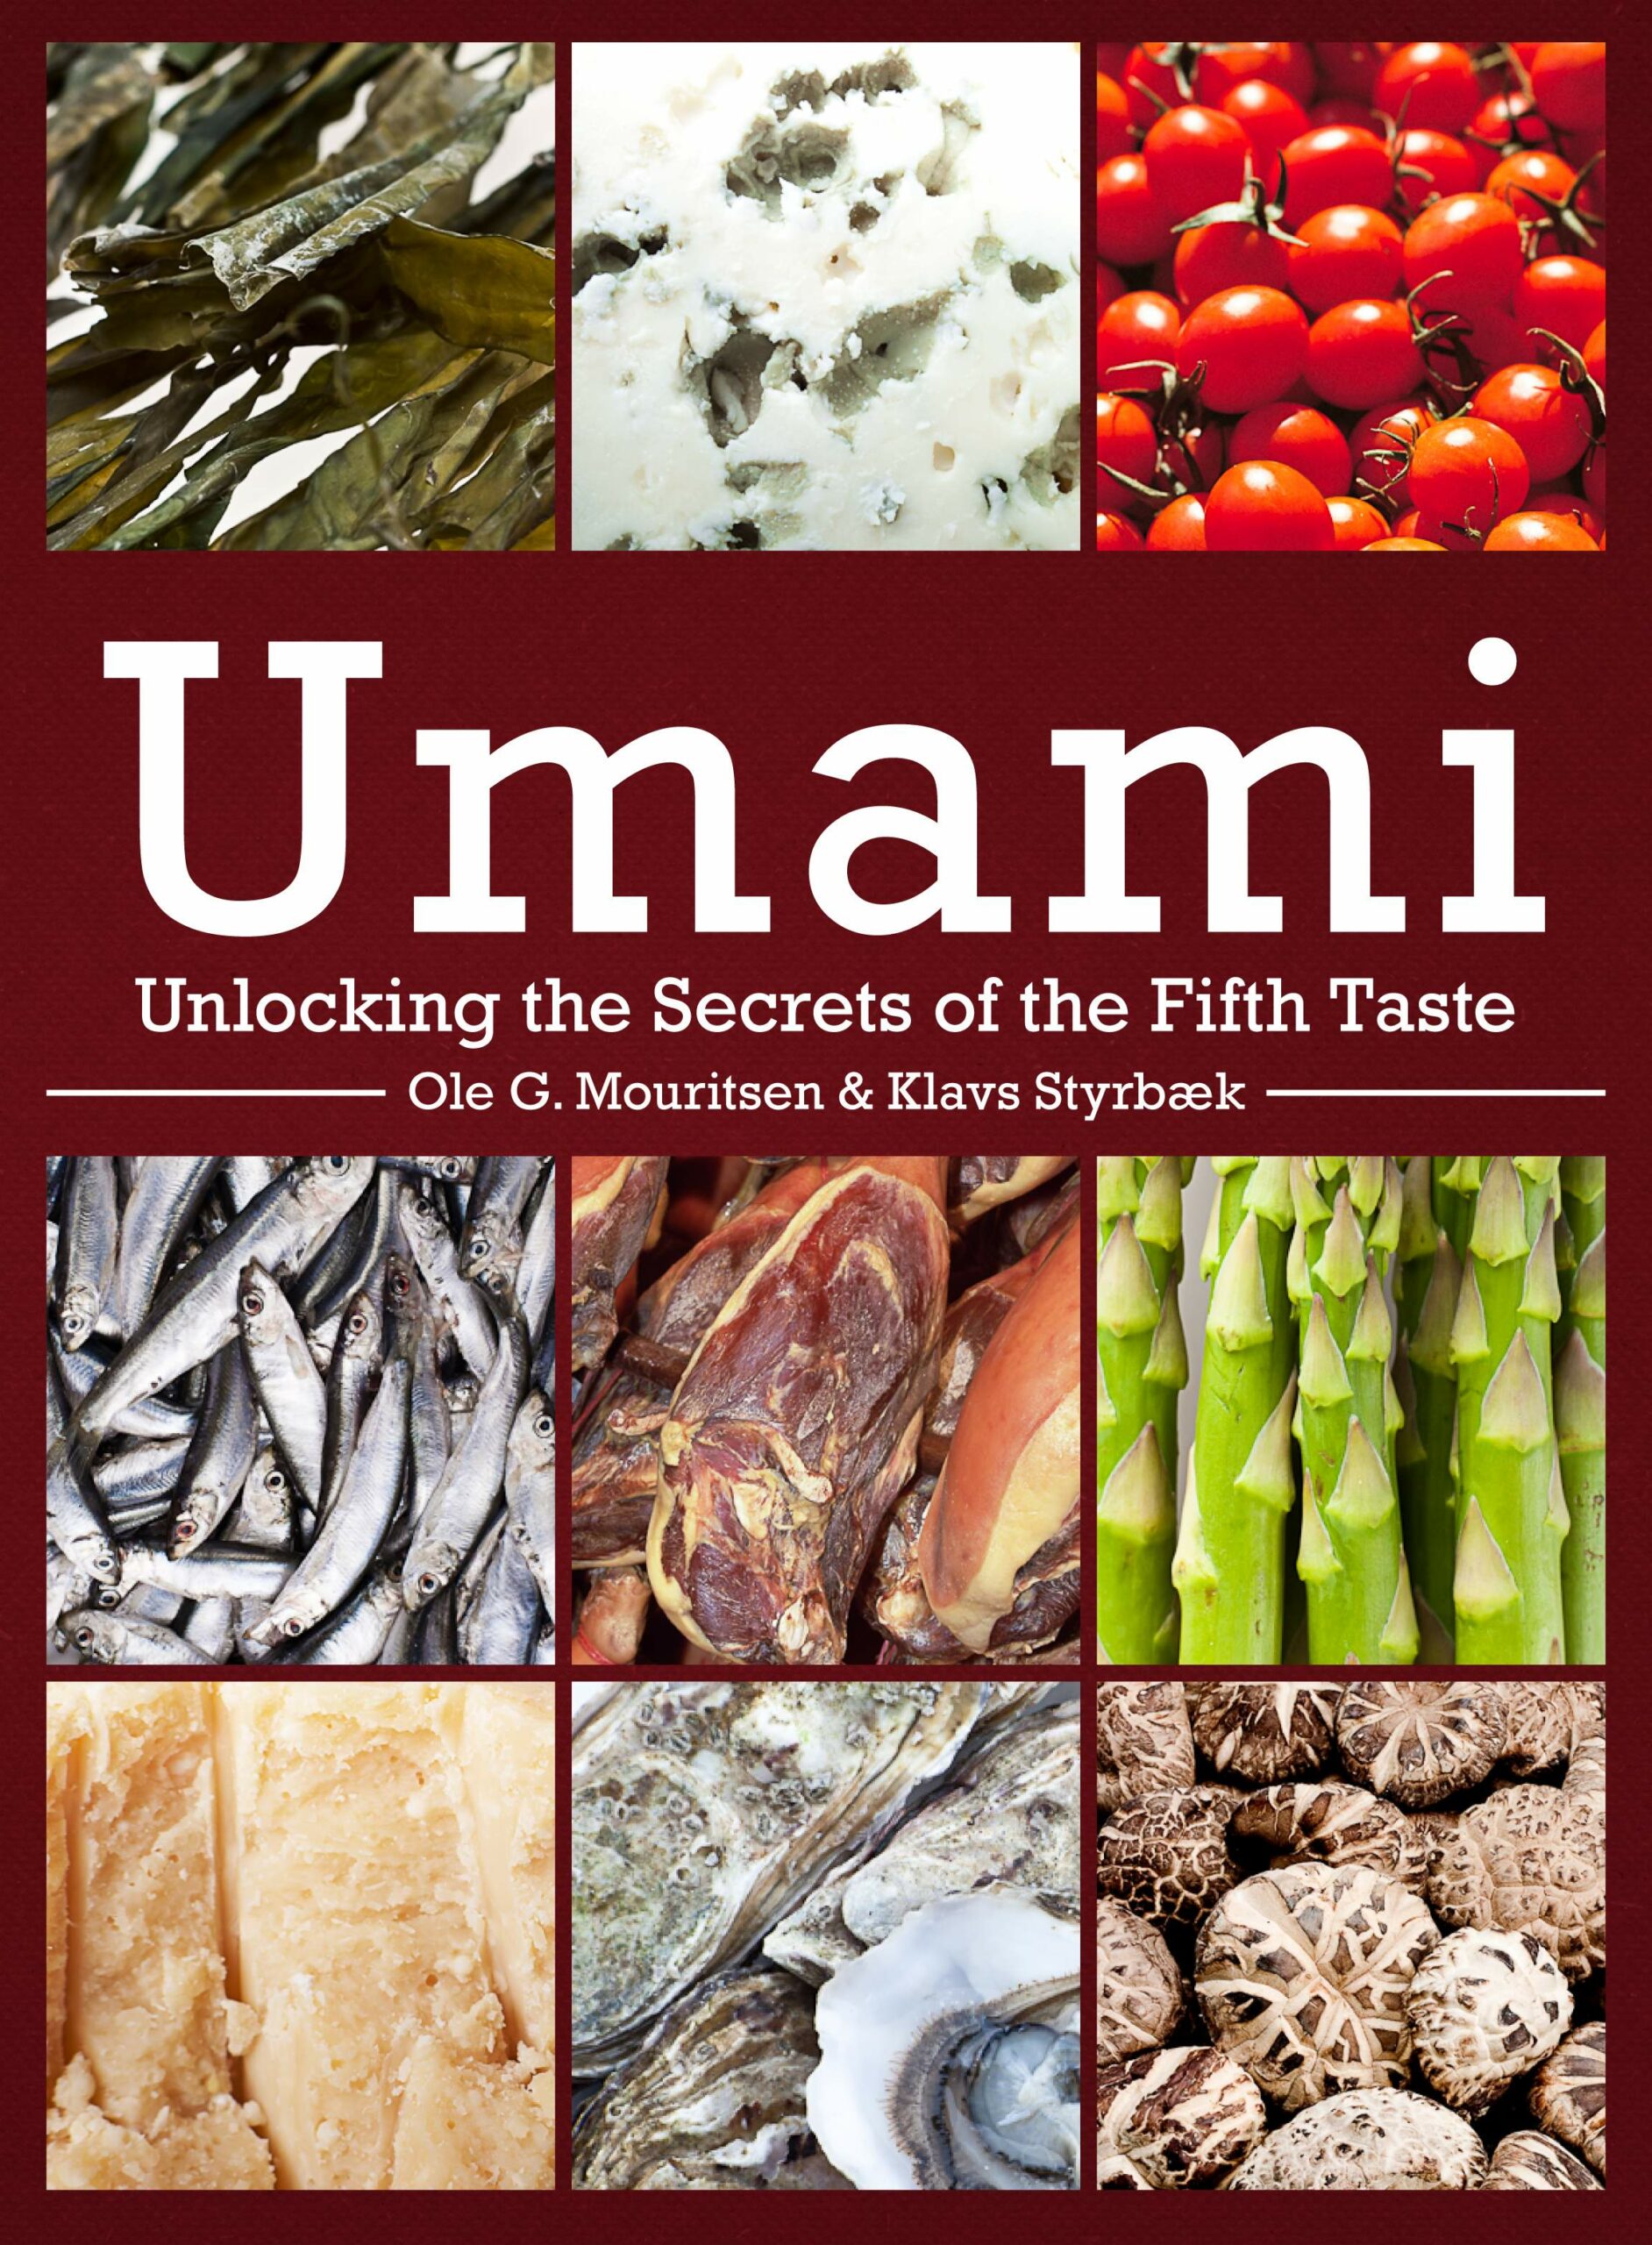 What is Umami?, Everything about umami, Umami